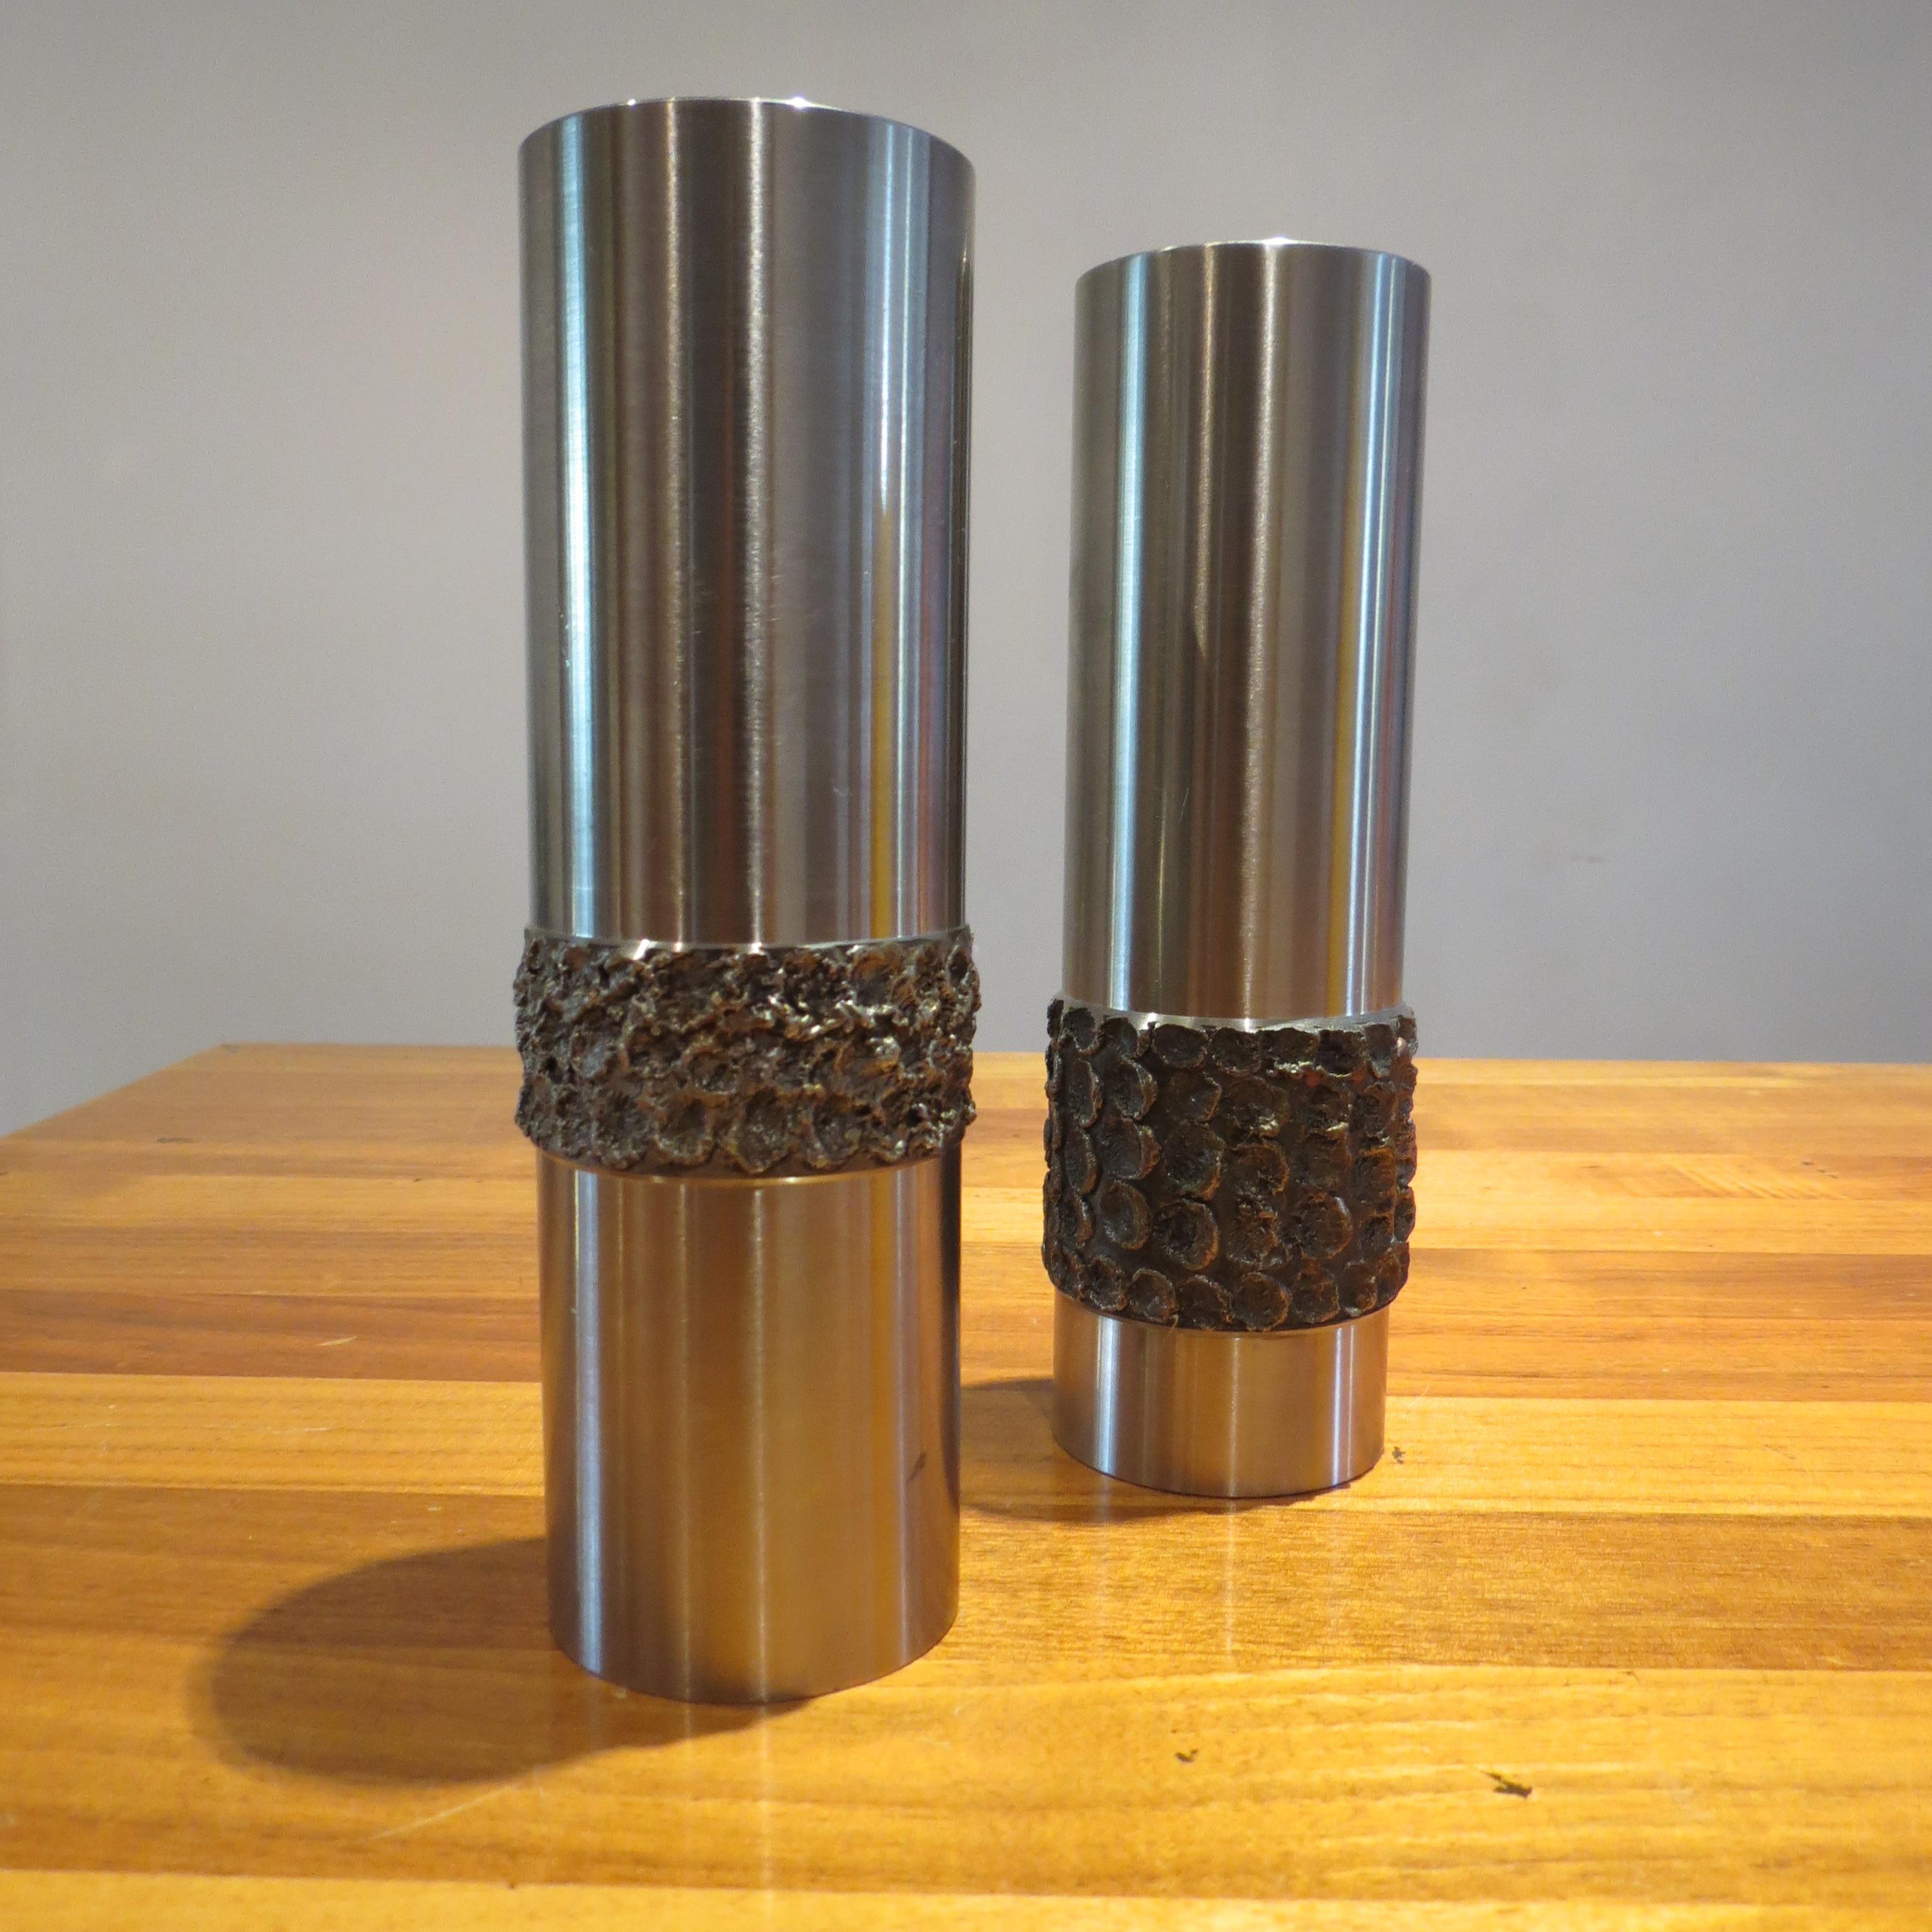 Pair of 1970s German Metal Brutalist Stainless Steel Handcrafted Vases B 1